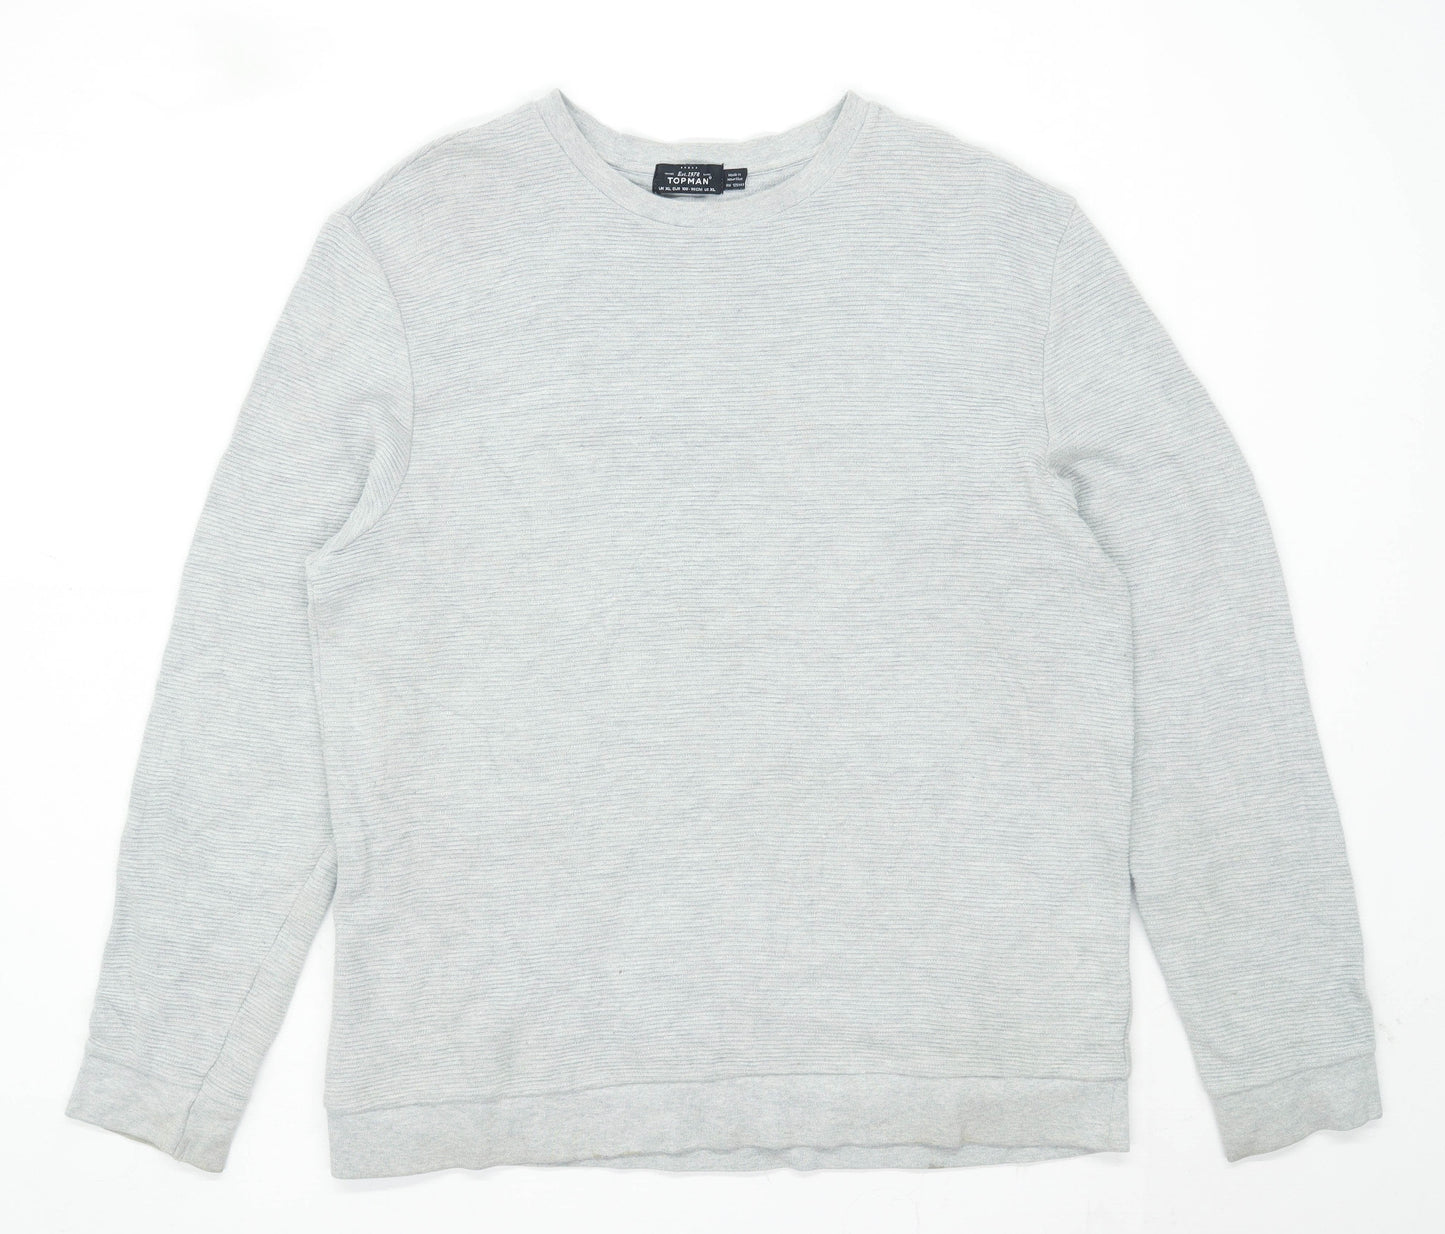 Topman Mens Size XL Cotton Blend Grey Sweatshirt